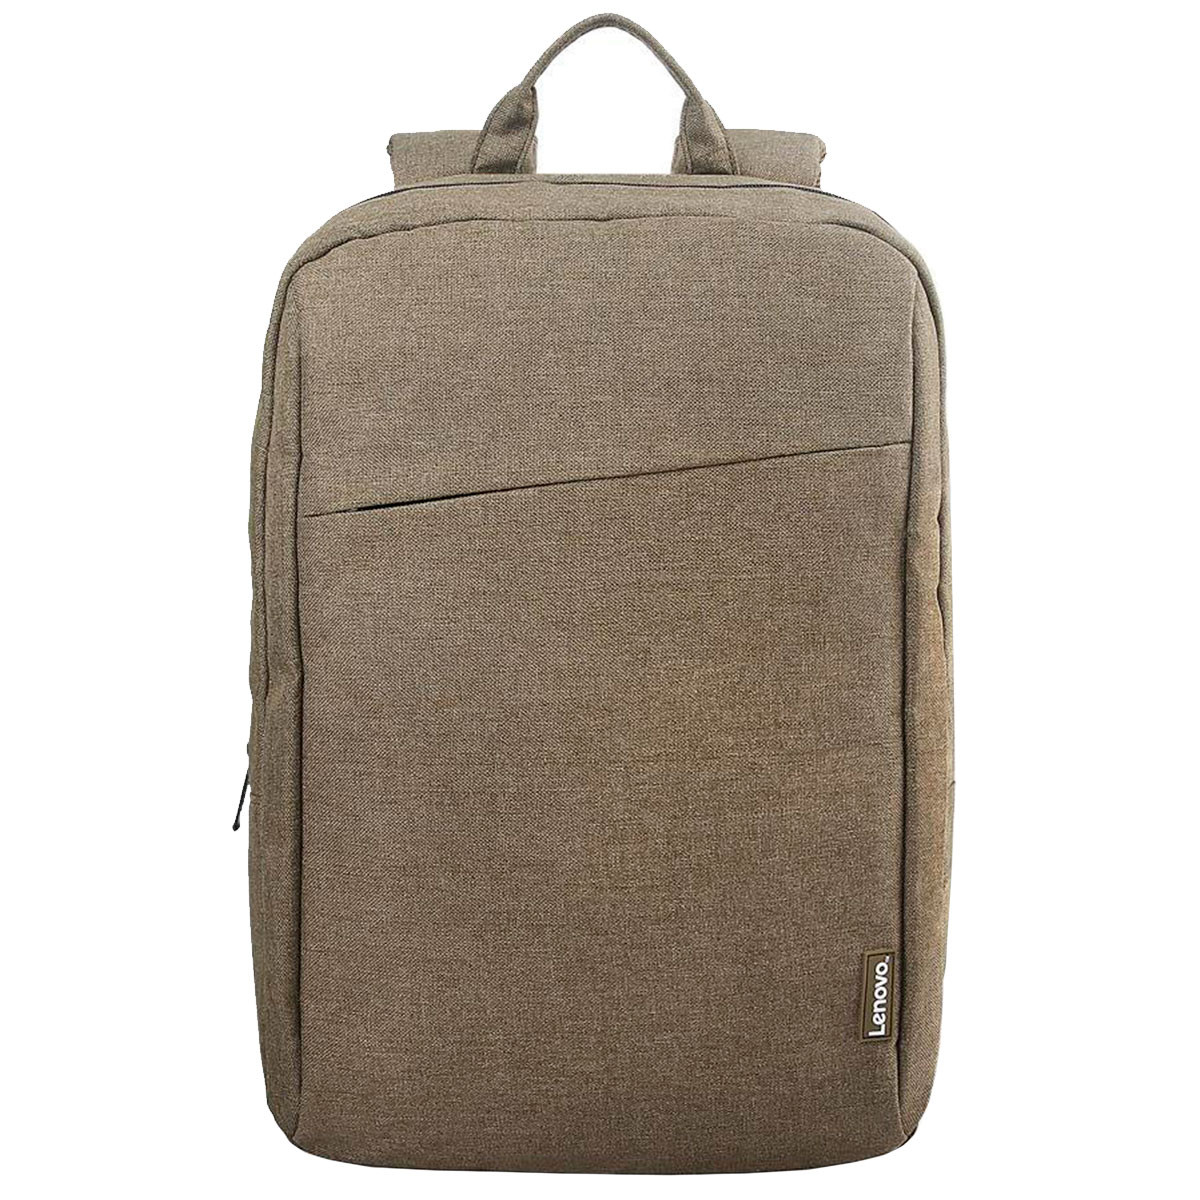 Mochila Xiaomi MI Casual Backpack para Notebook hasta 15,6 • El